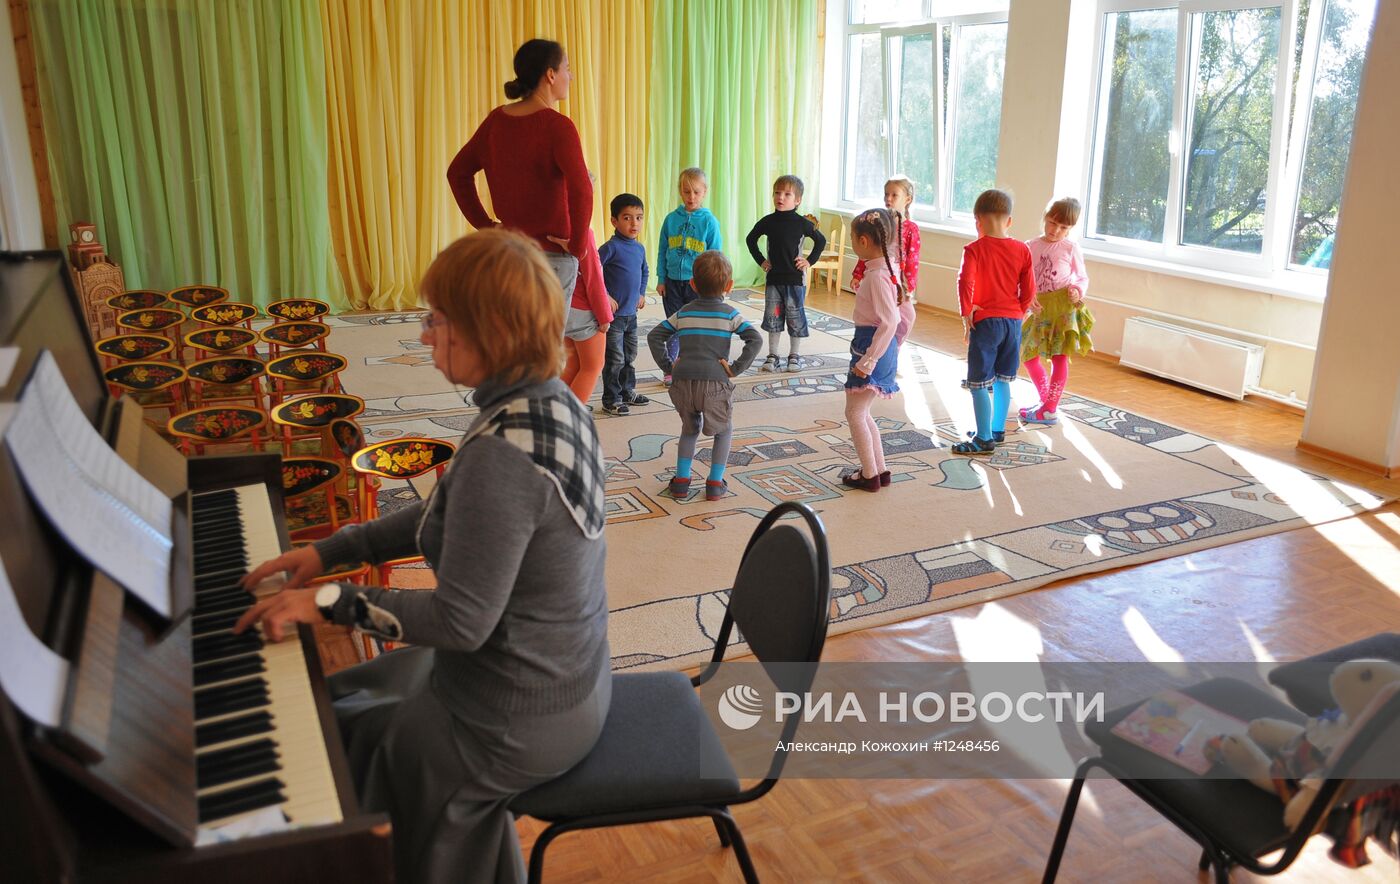 Работа детского сада комбинированного типа "Вишенка" в Москве